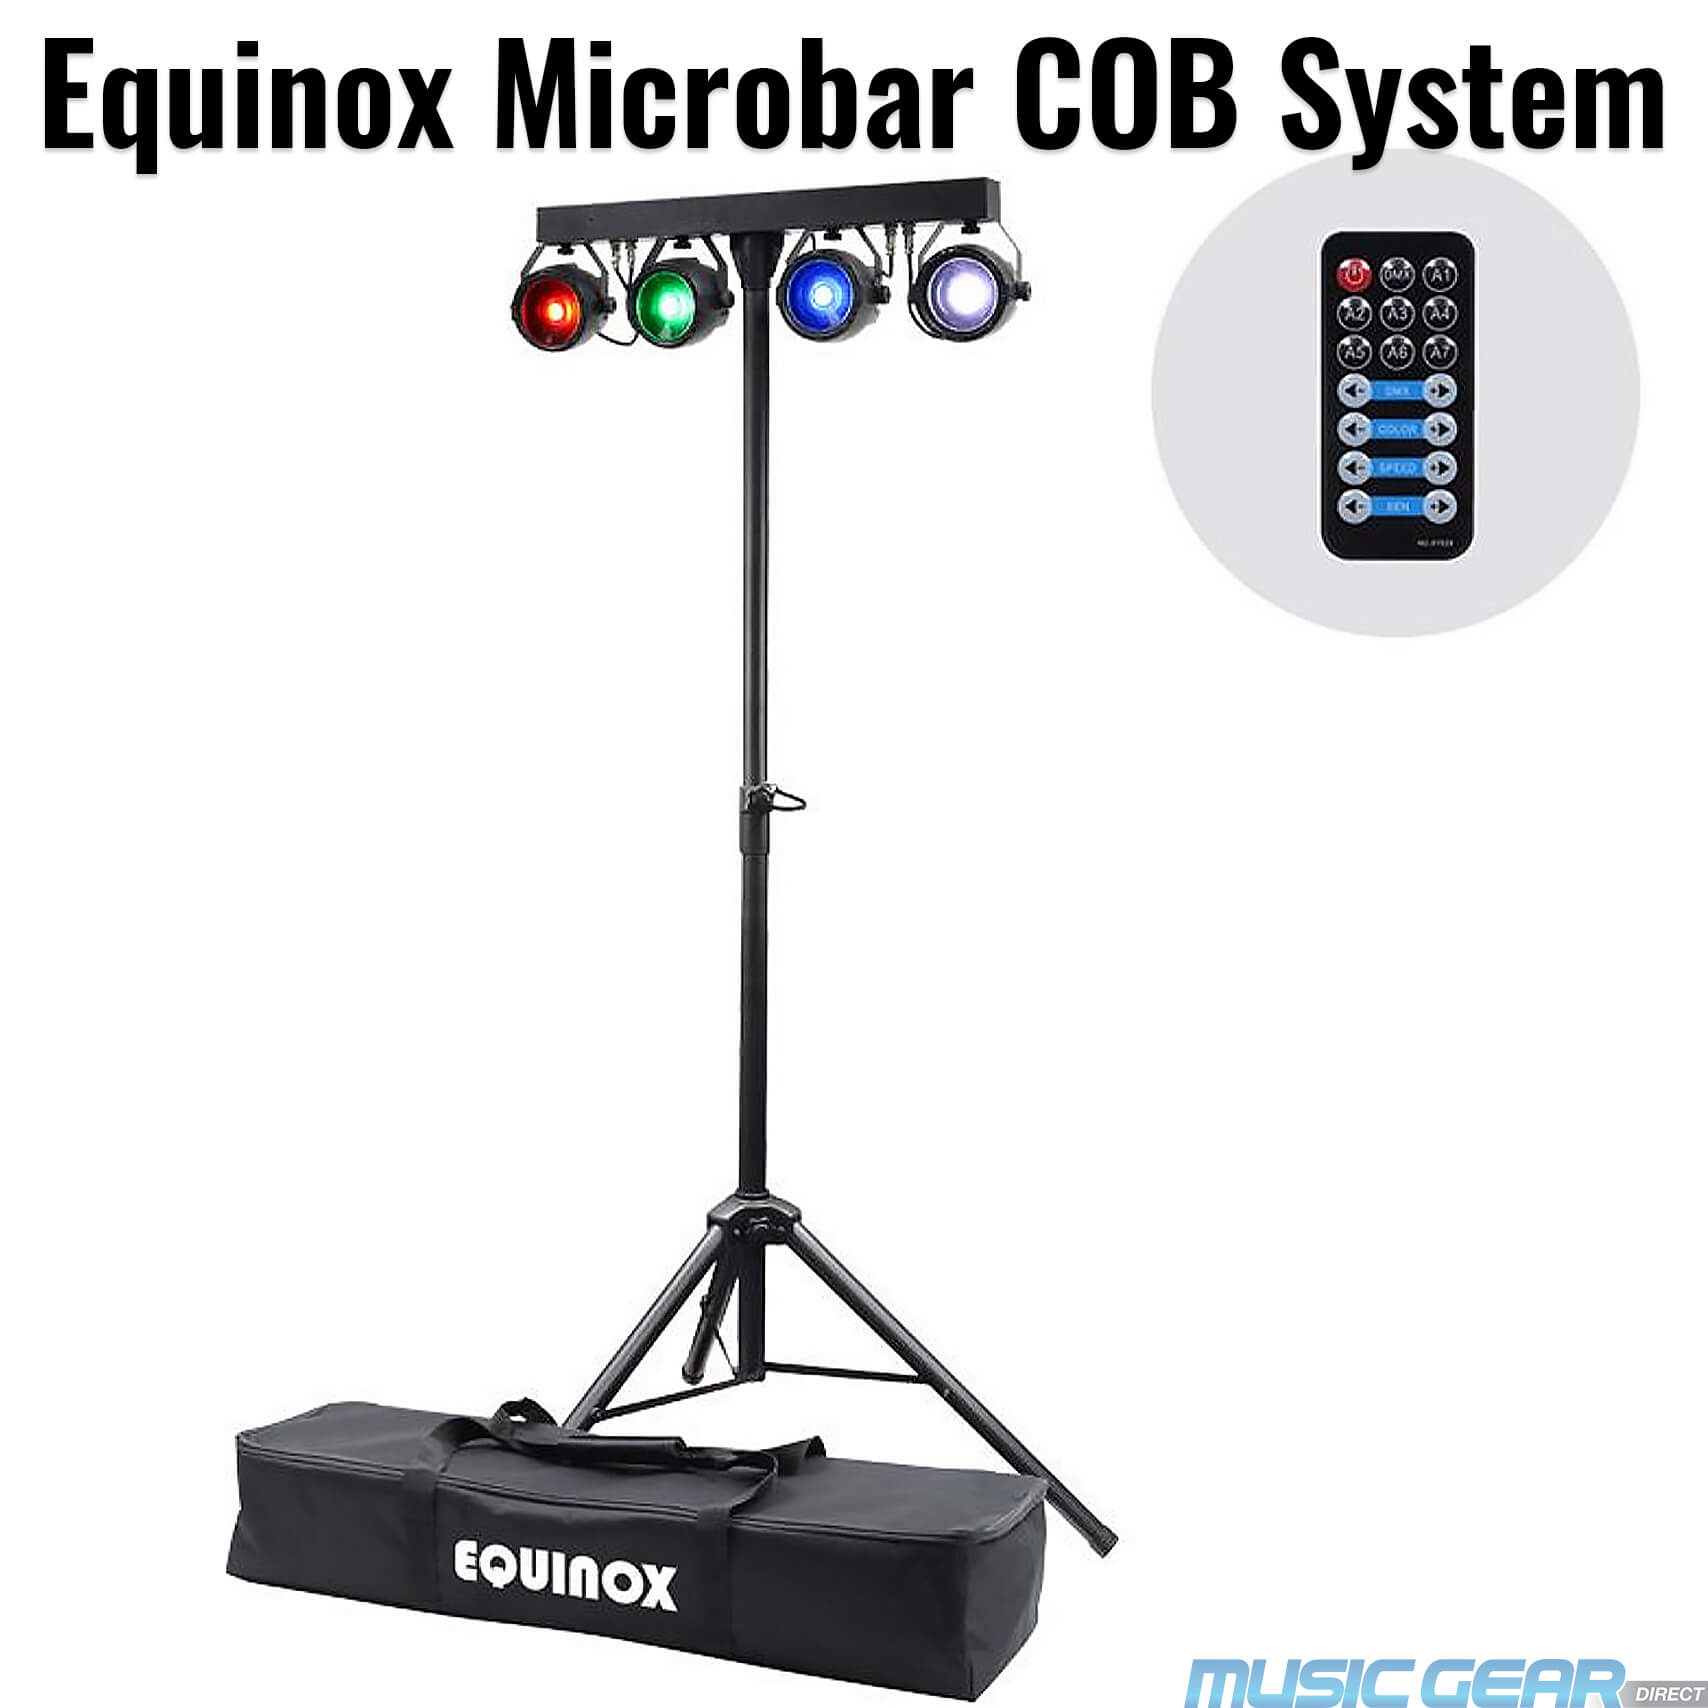 Equinox EQLED137 Microbar COB System